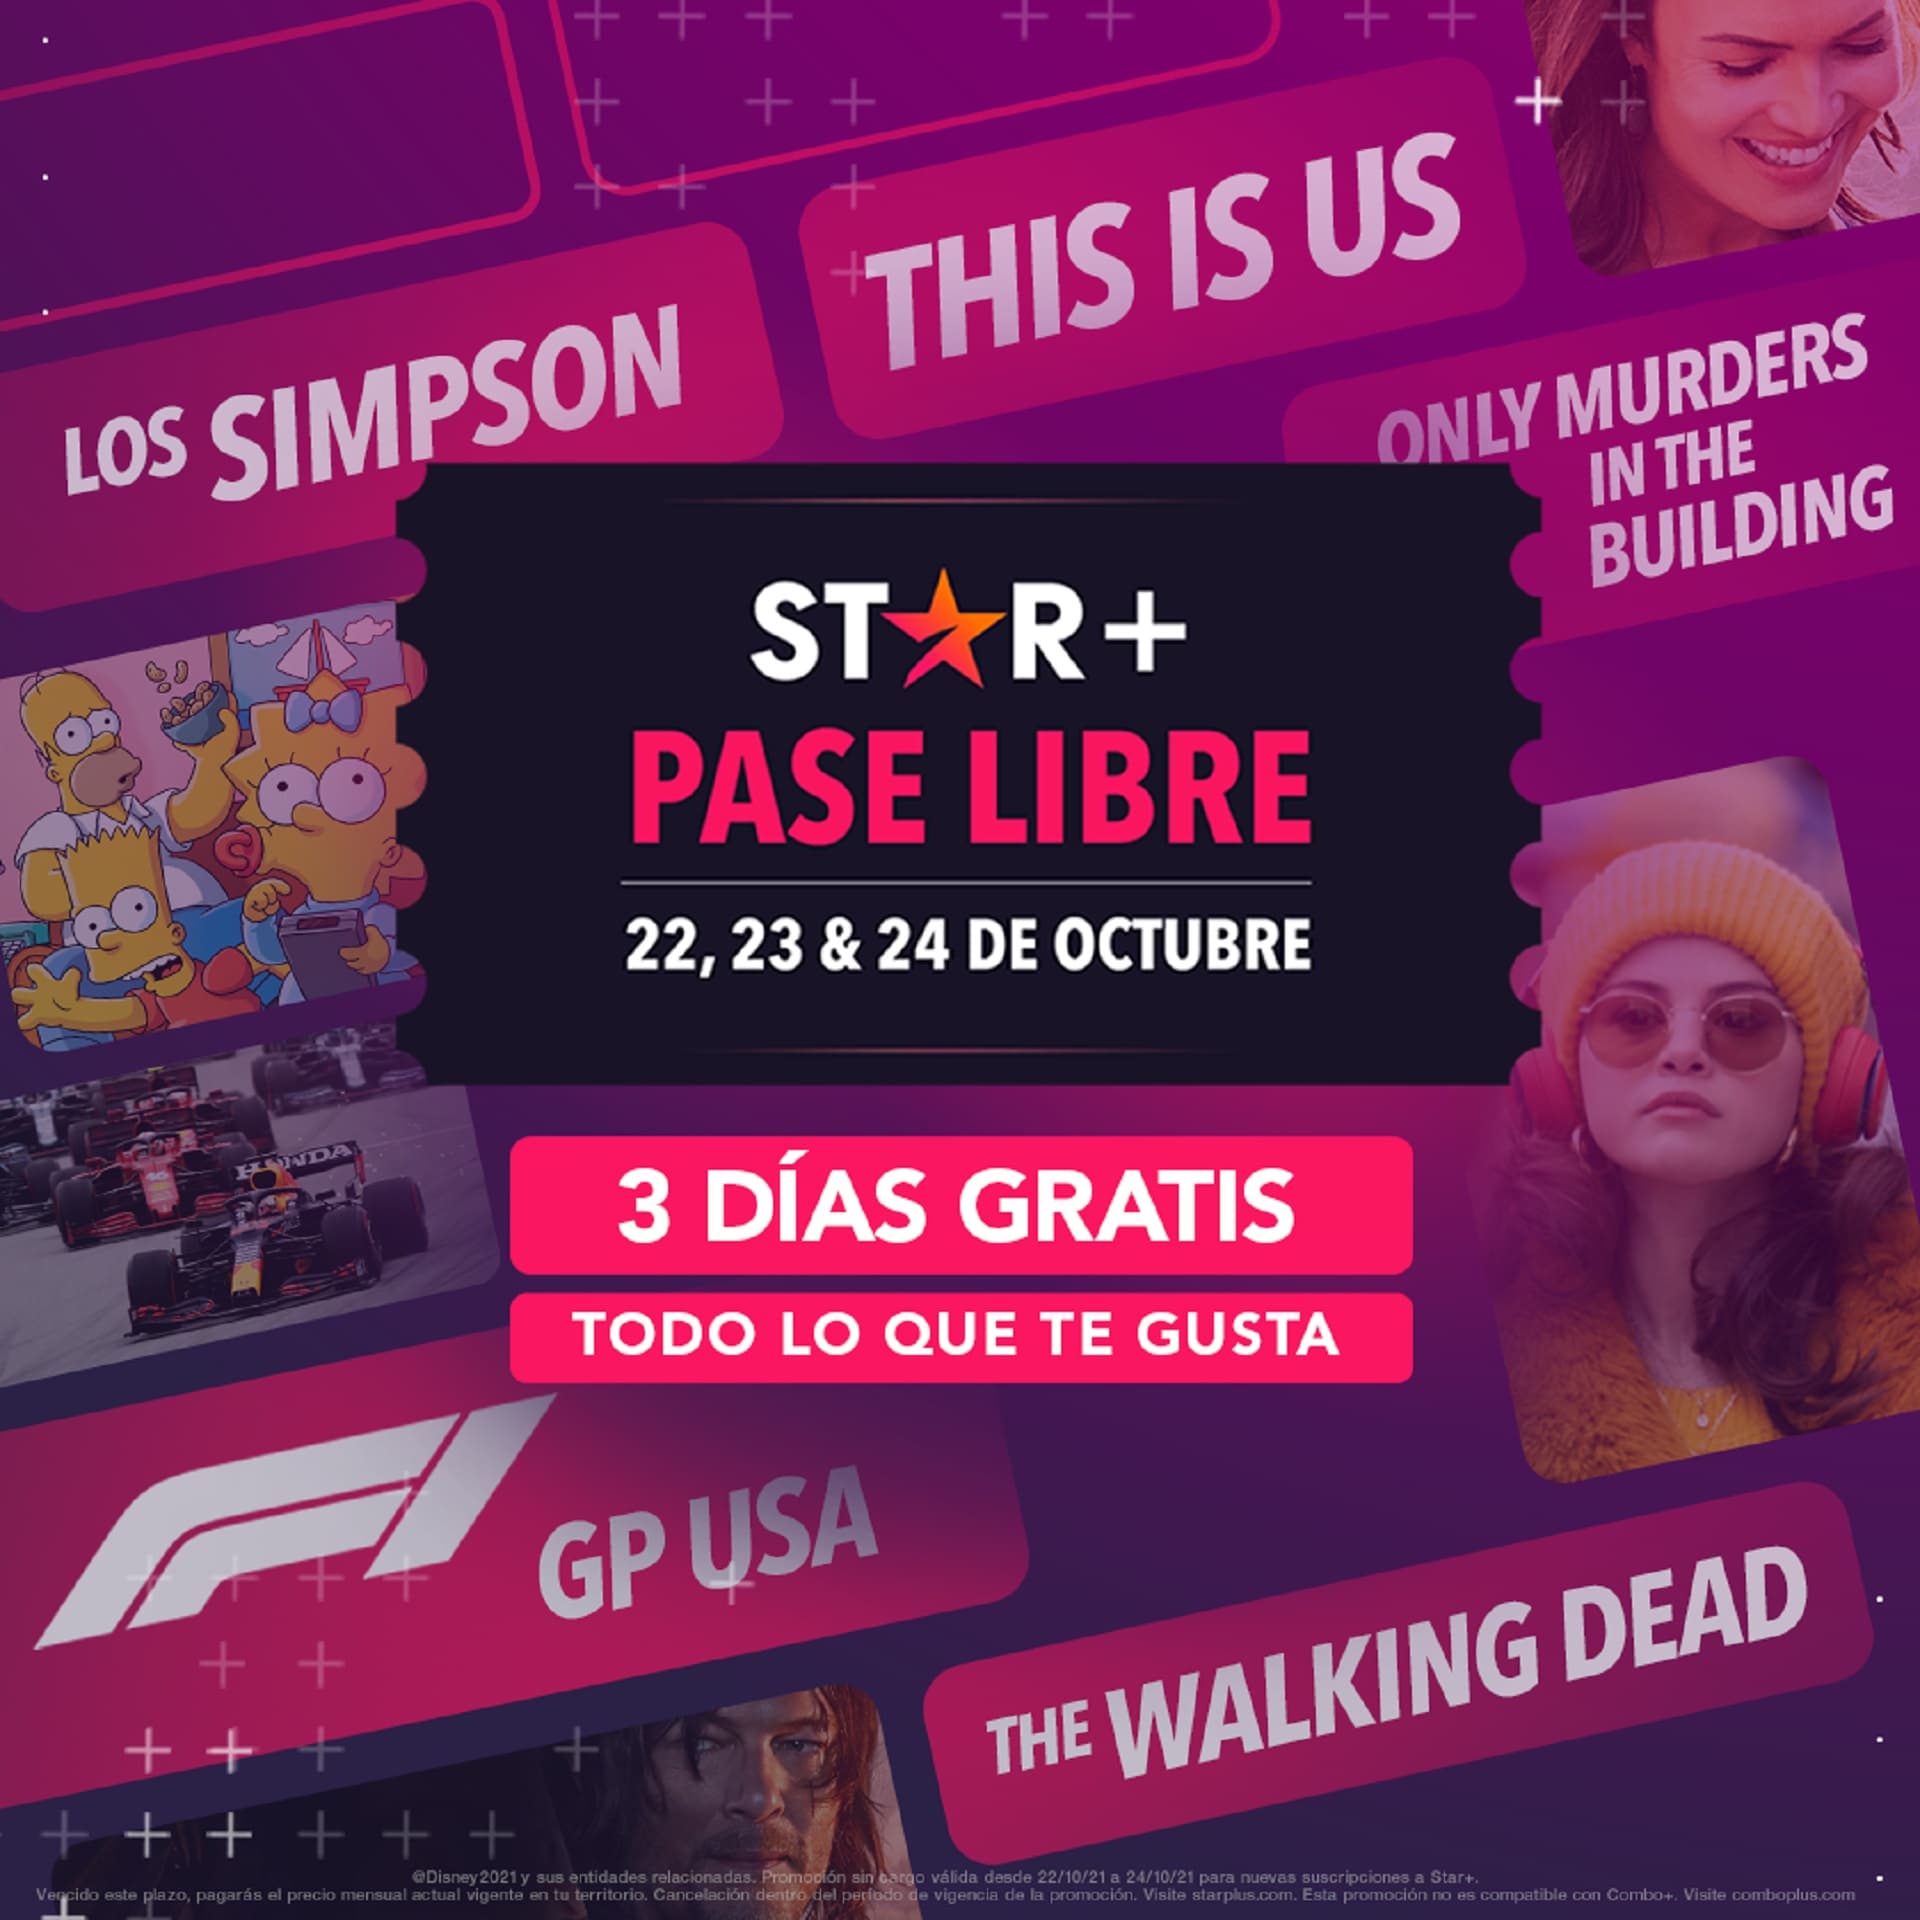 Star Plus liberado: tres días de series, películas y partidos gratis en Perú